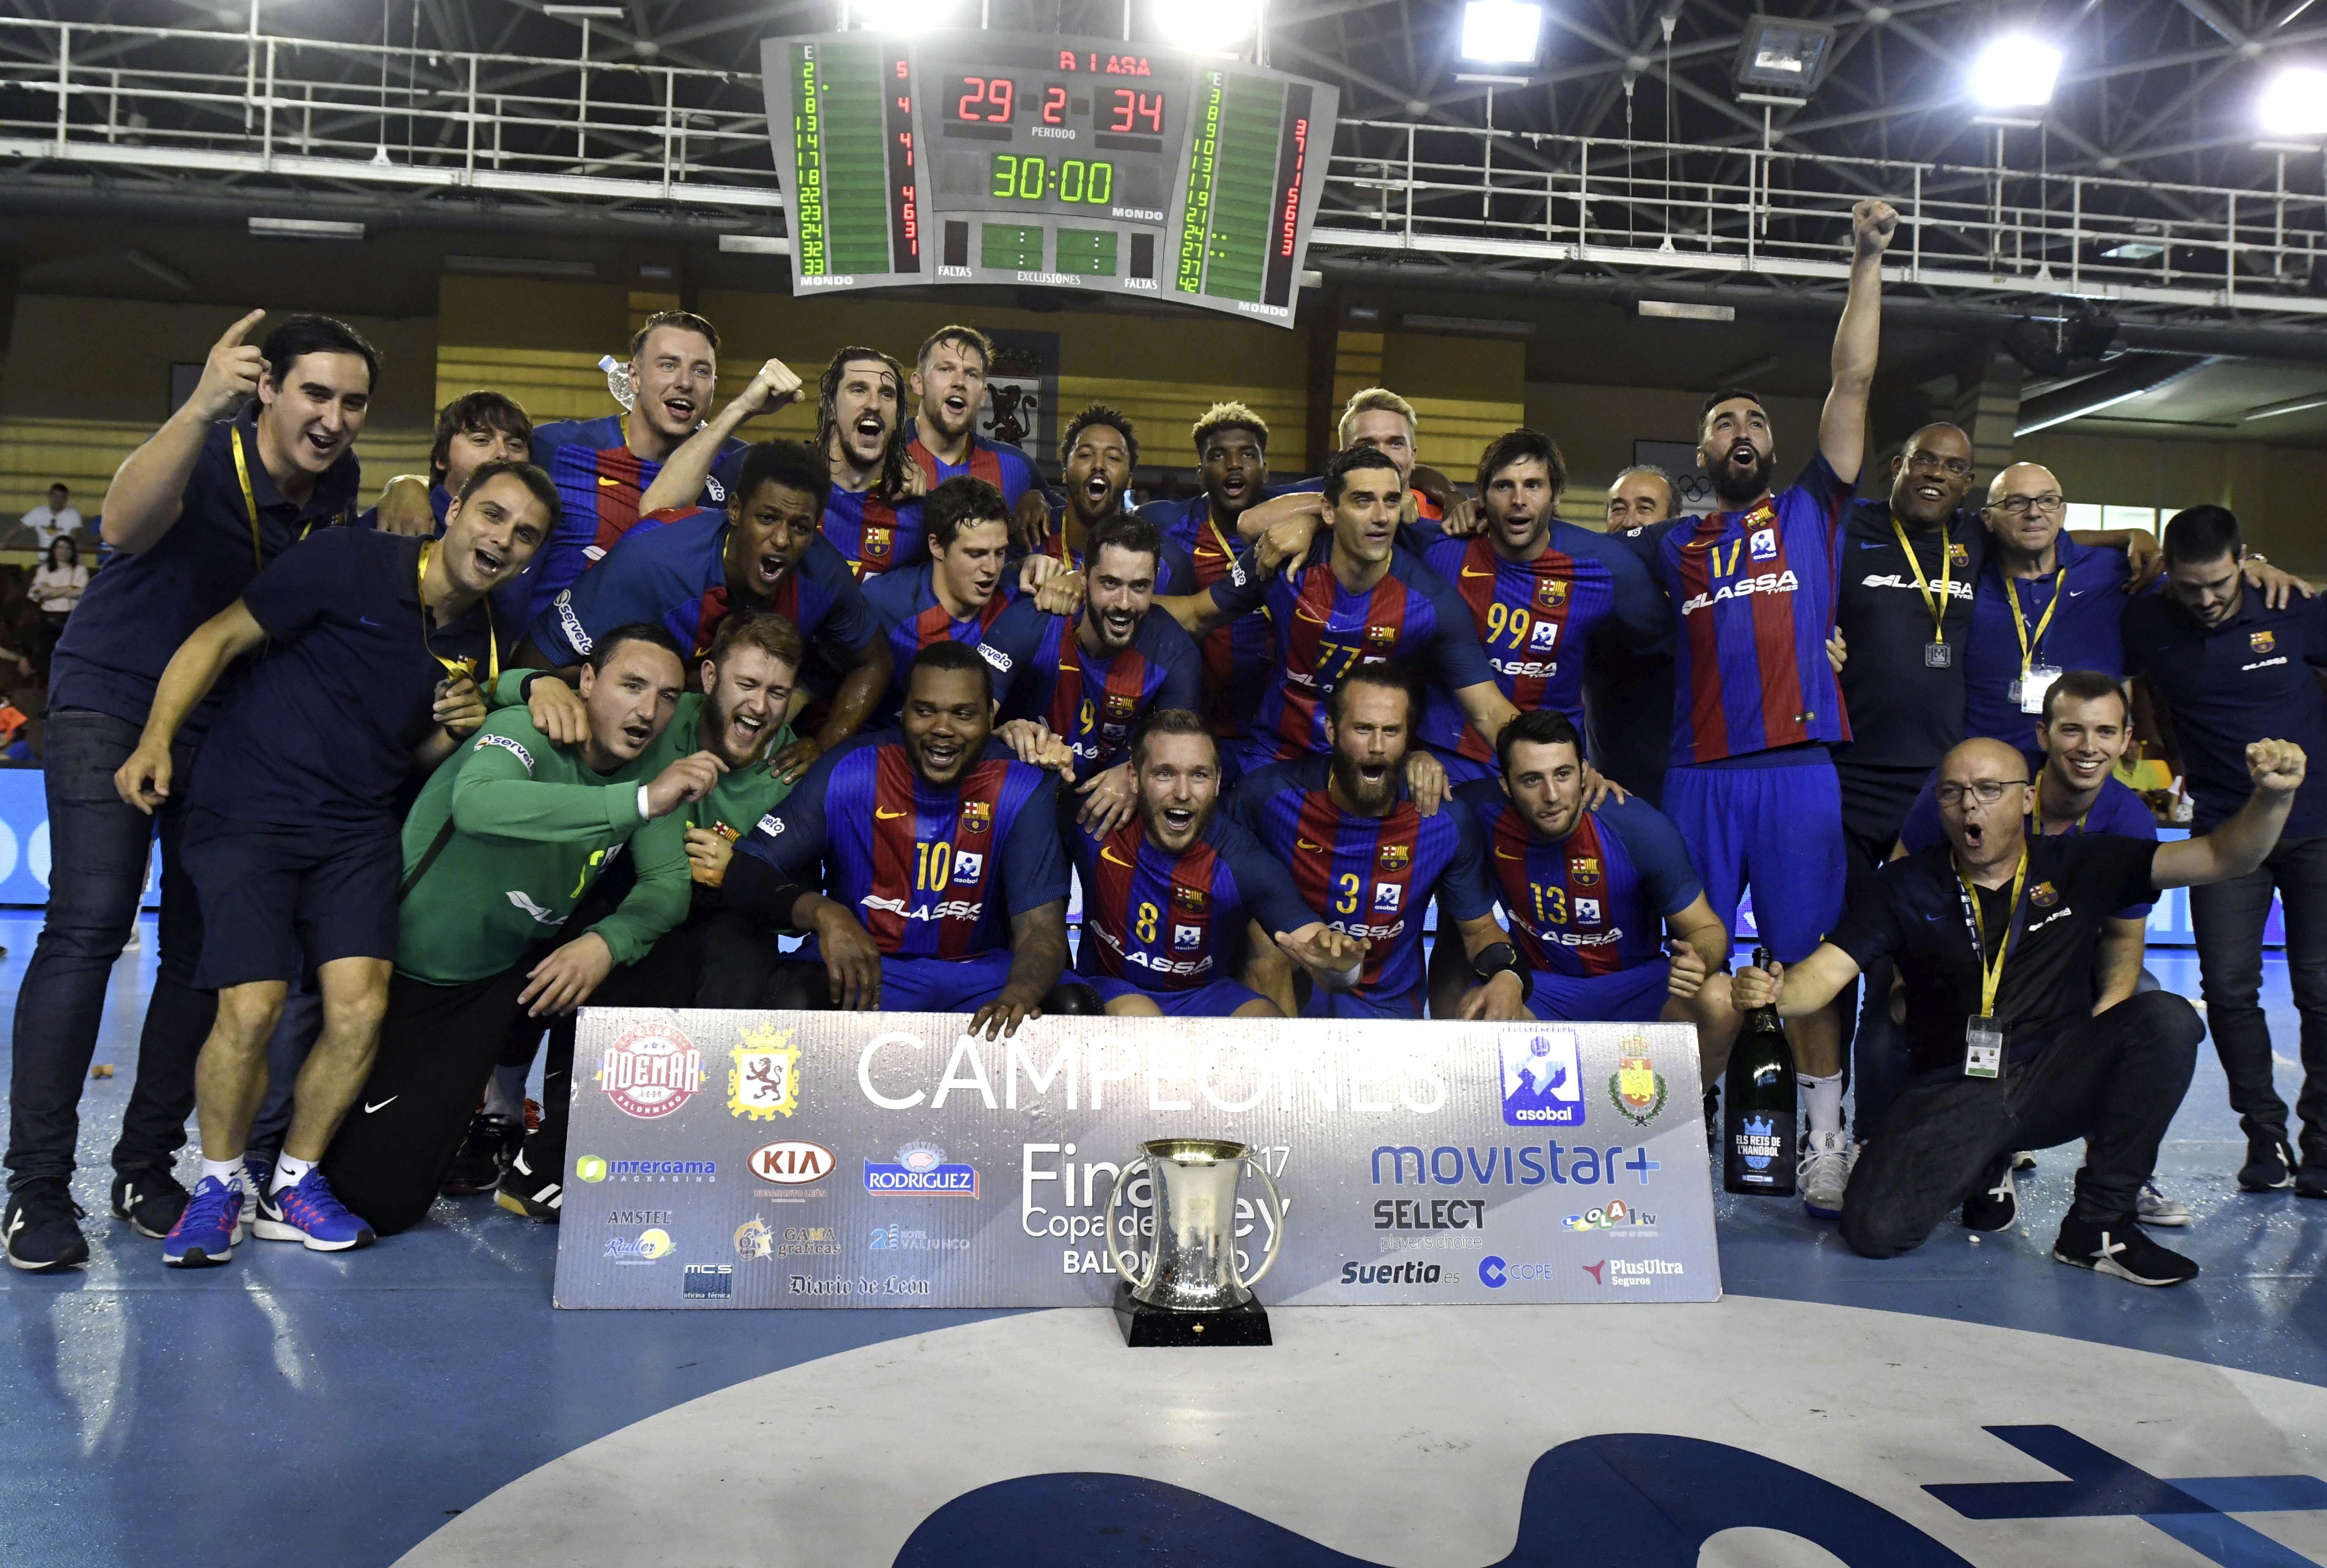 El Barça d'handbol guanya la quarta Copa consecutiva